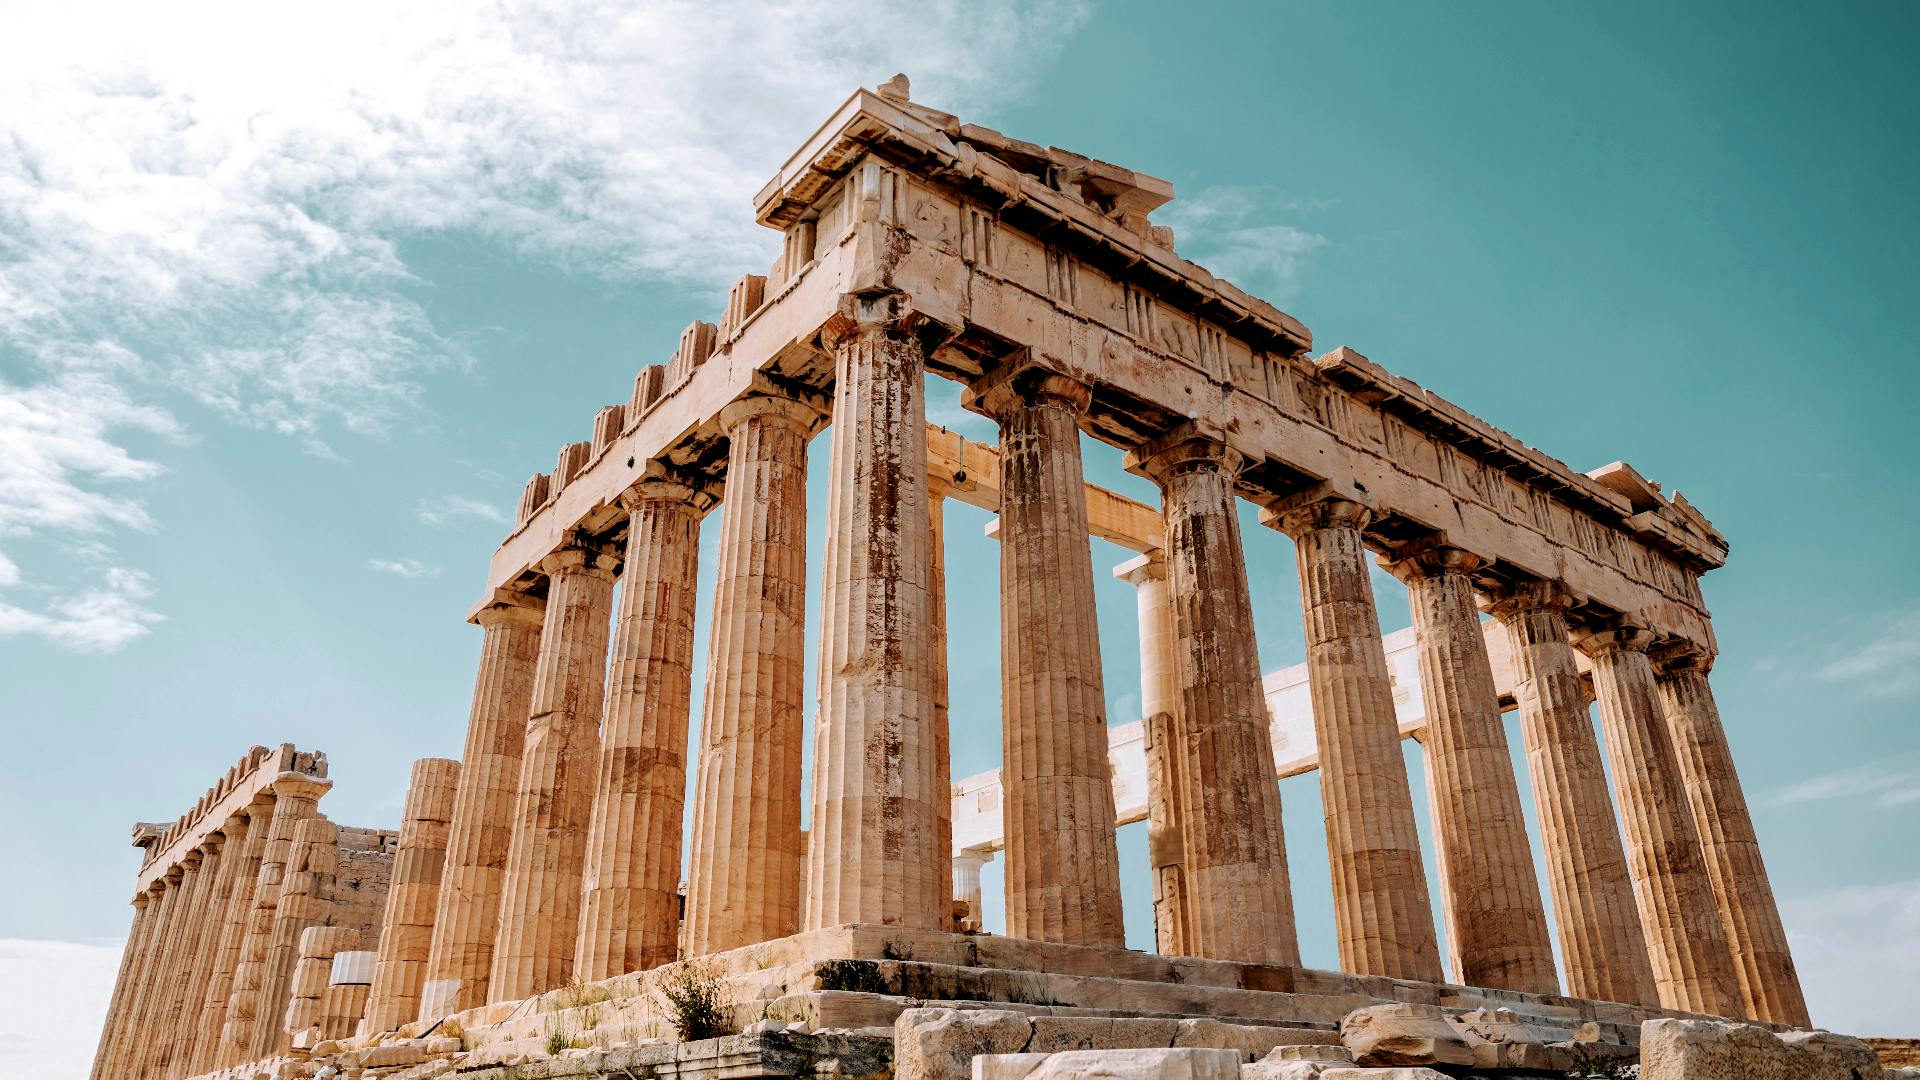 Samodzielny spacer po ukrytych klejnotach i historii Aten